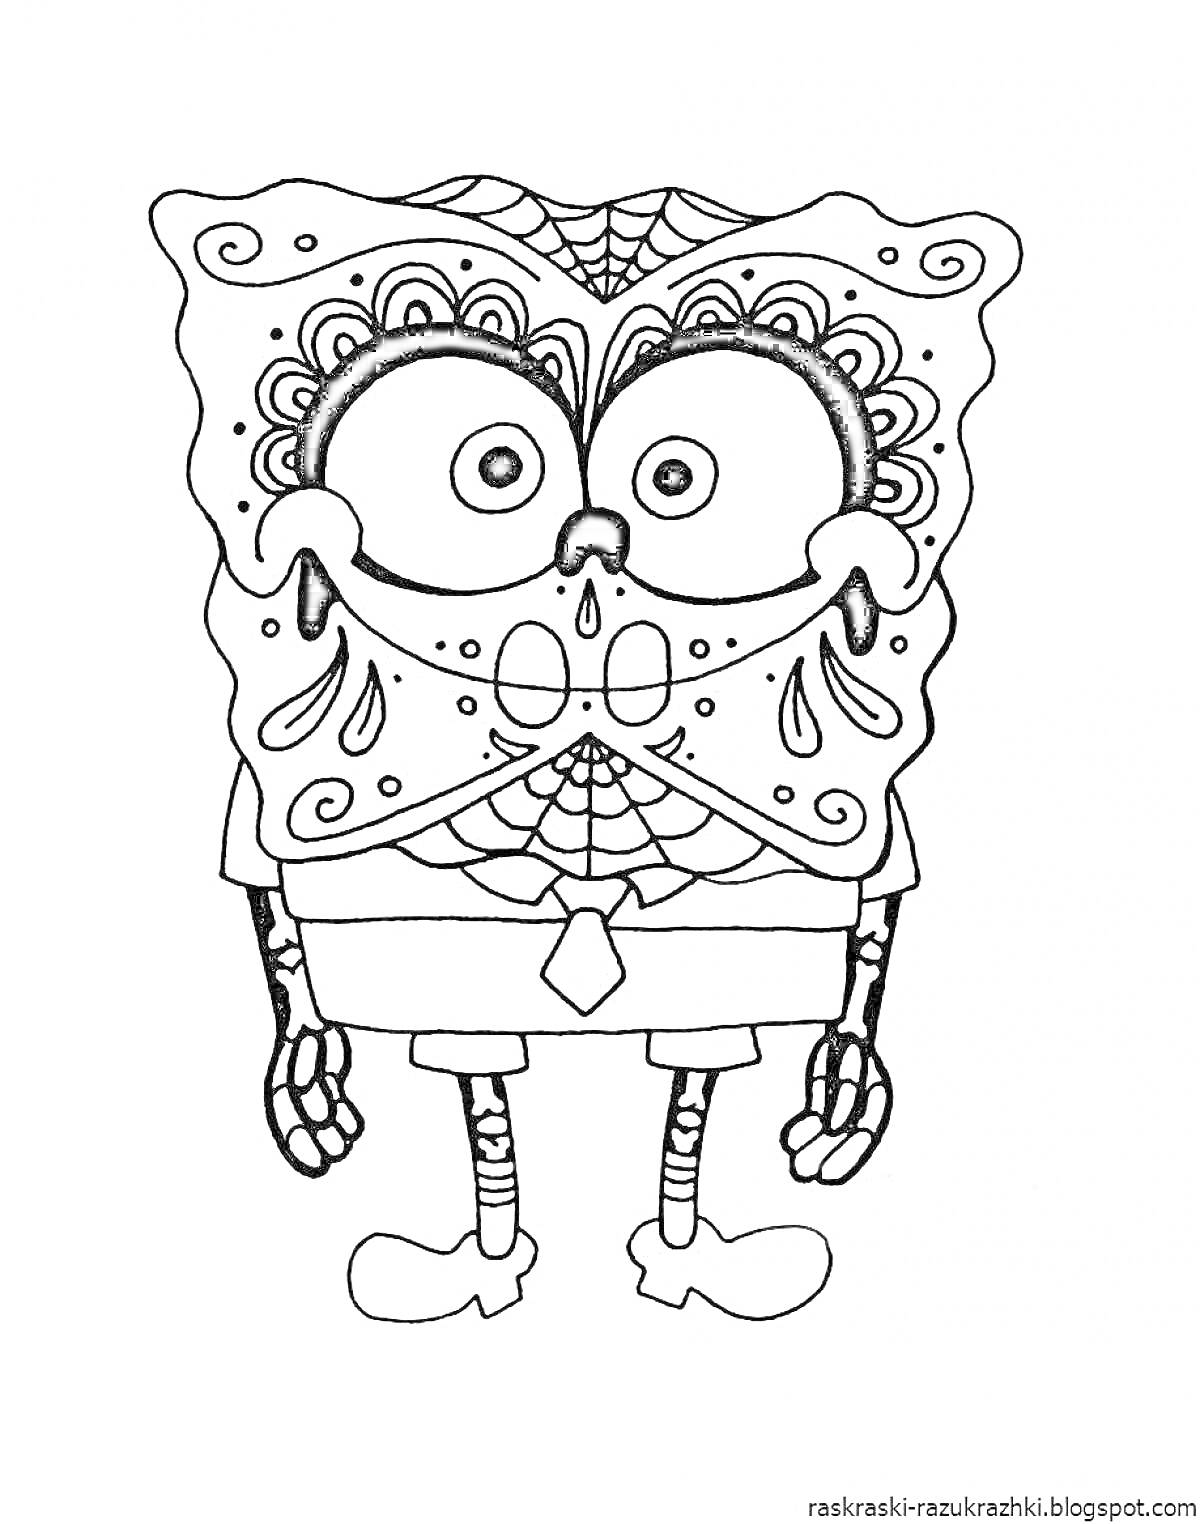 персонаж-губка с рисунками в стиле дудл и день мертвых, в рубашке и галстуке, узоры паутины на лице